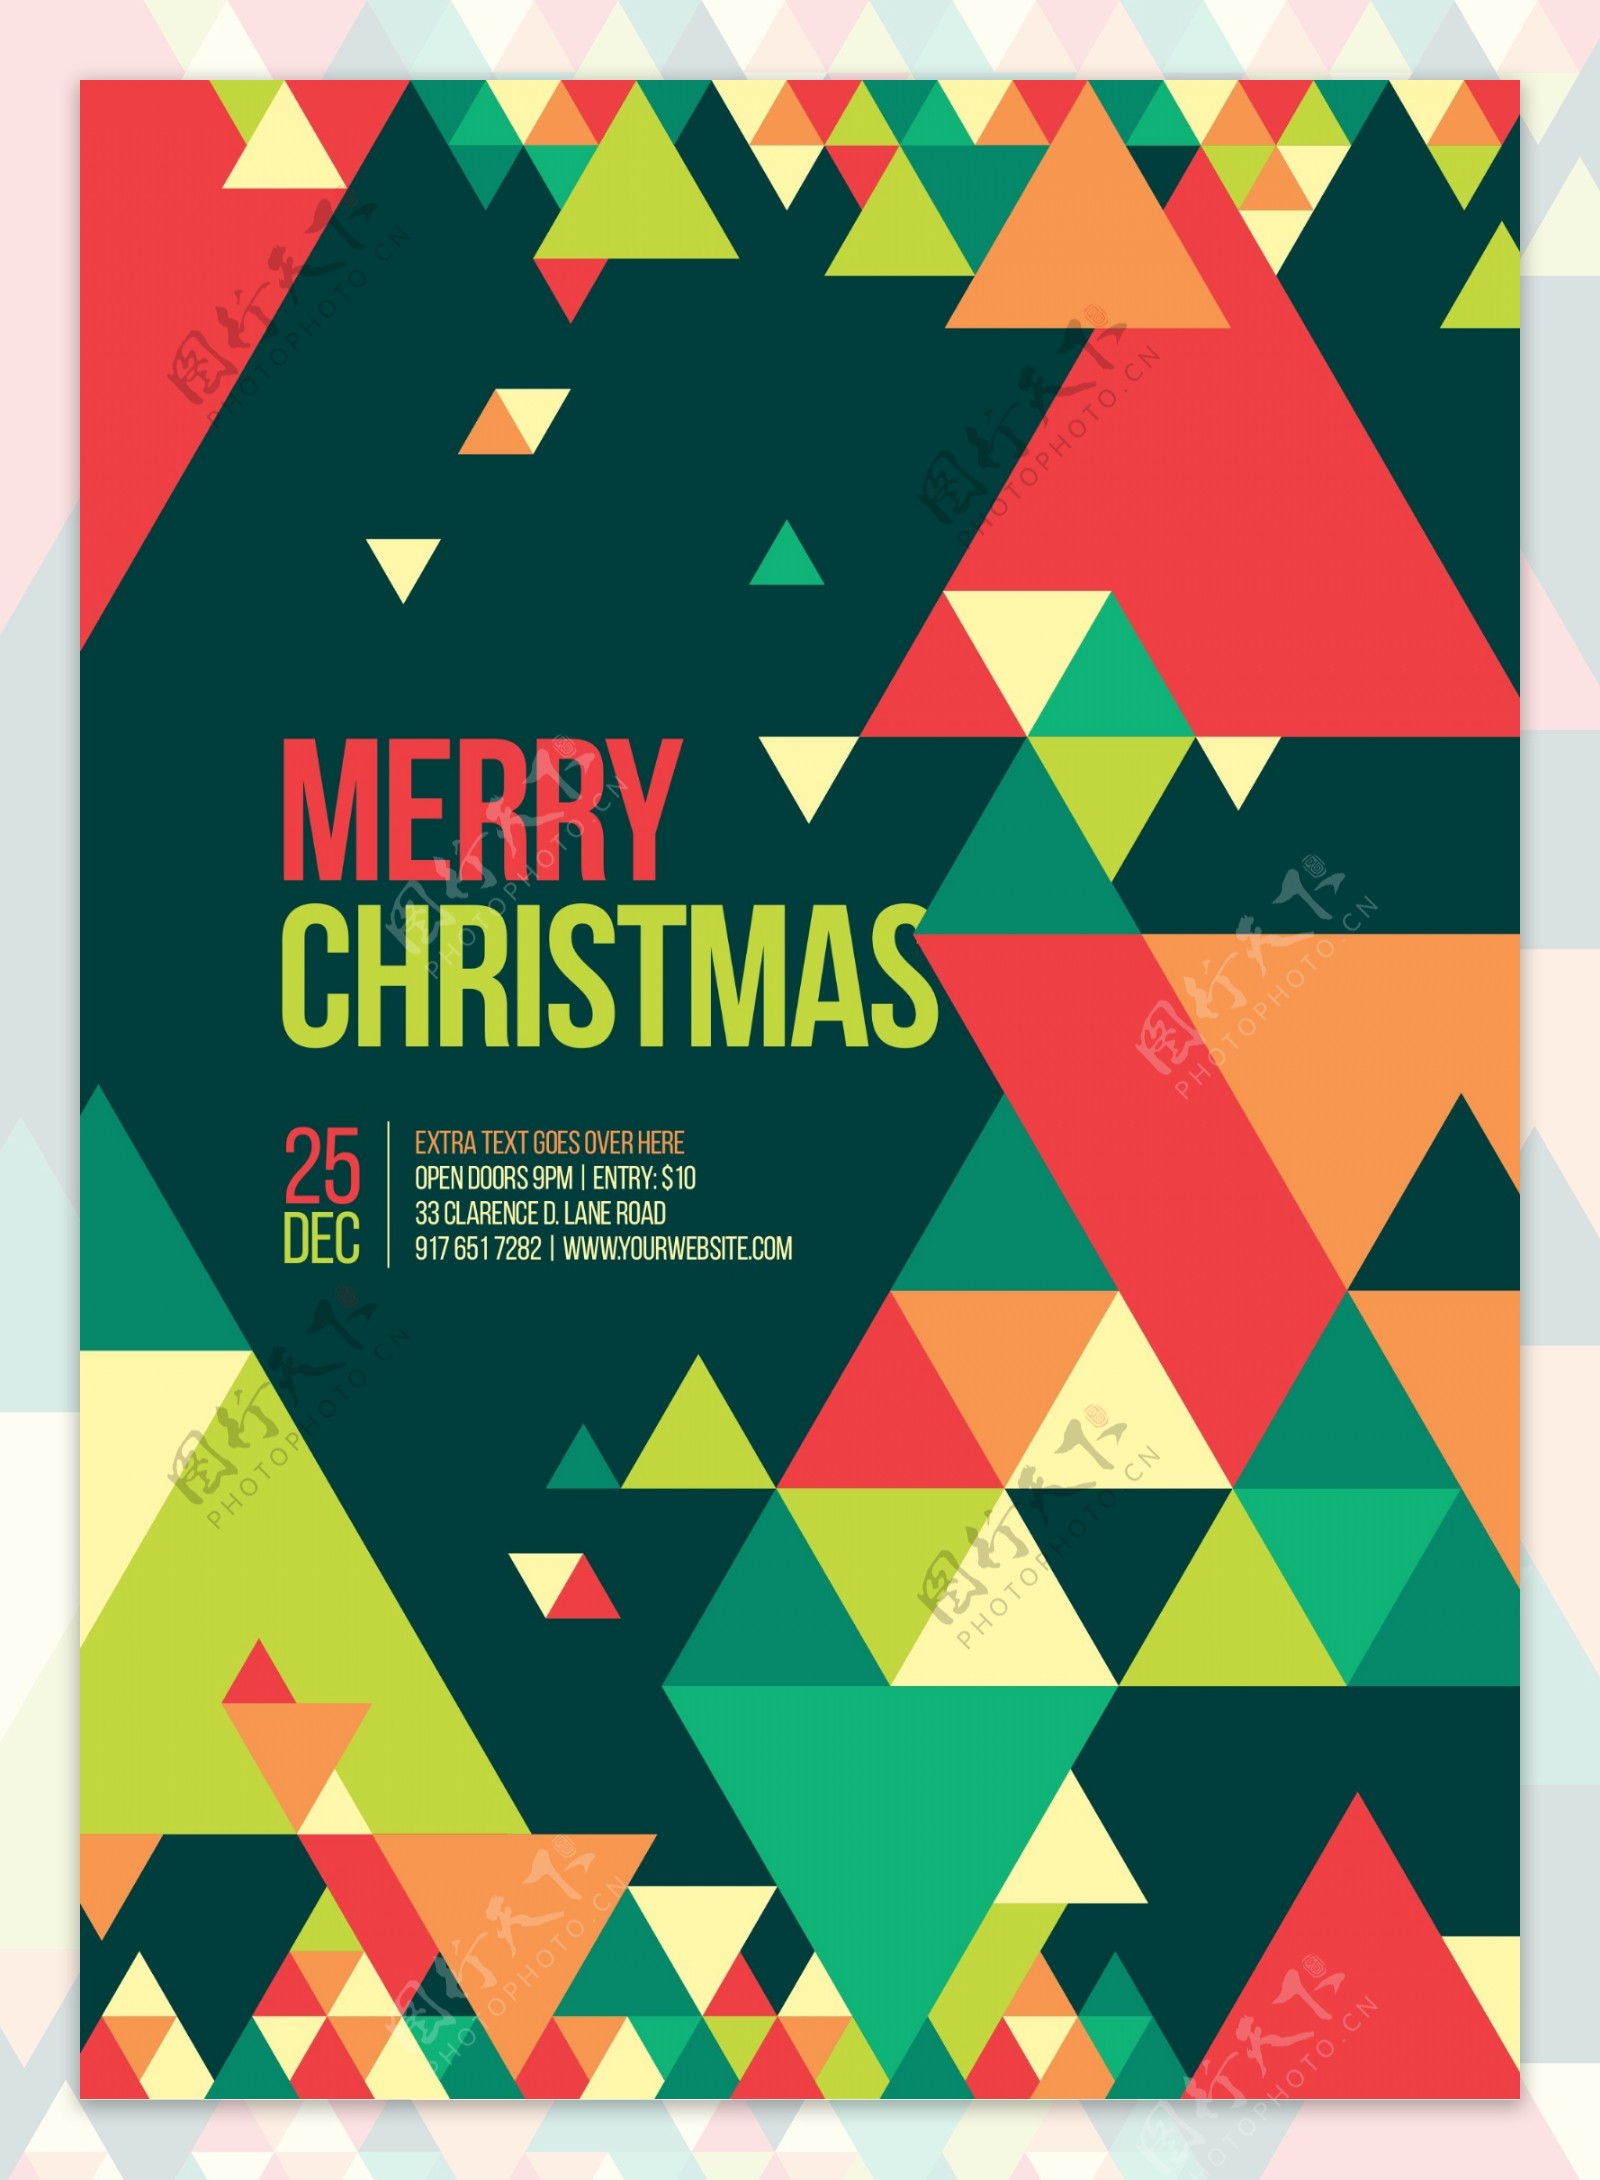 时尚几何背景圣诞海报设计